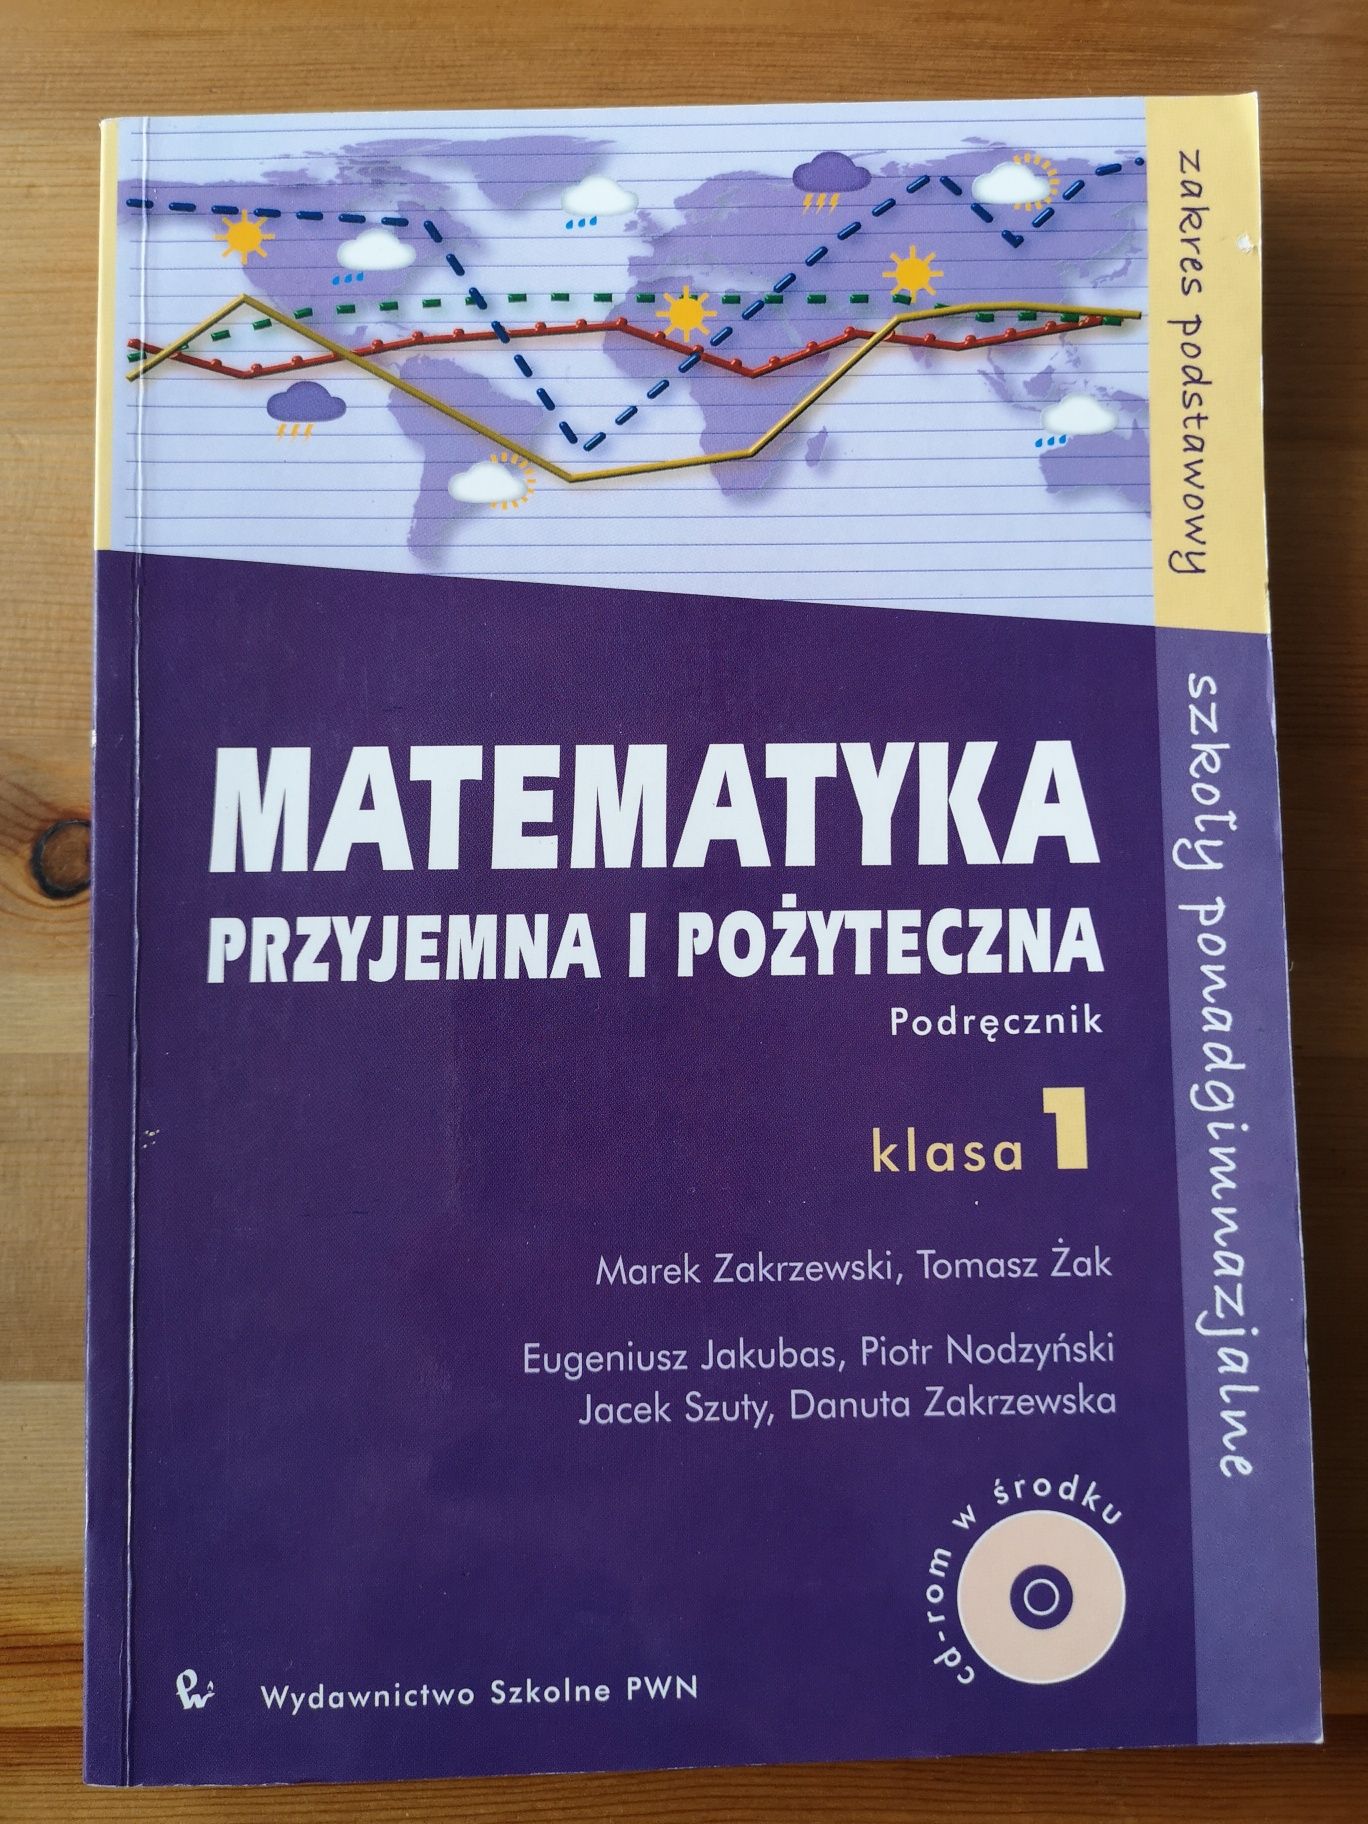 Matematyka przyjemna i pożyteczna, podręczniki tomy 1-3, PWN